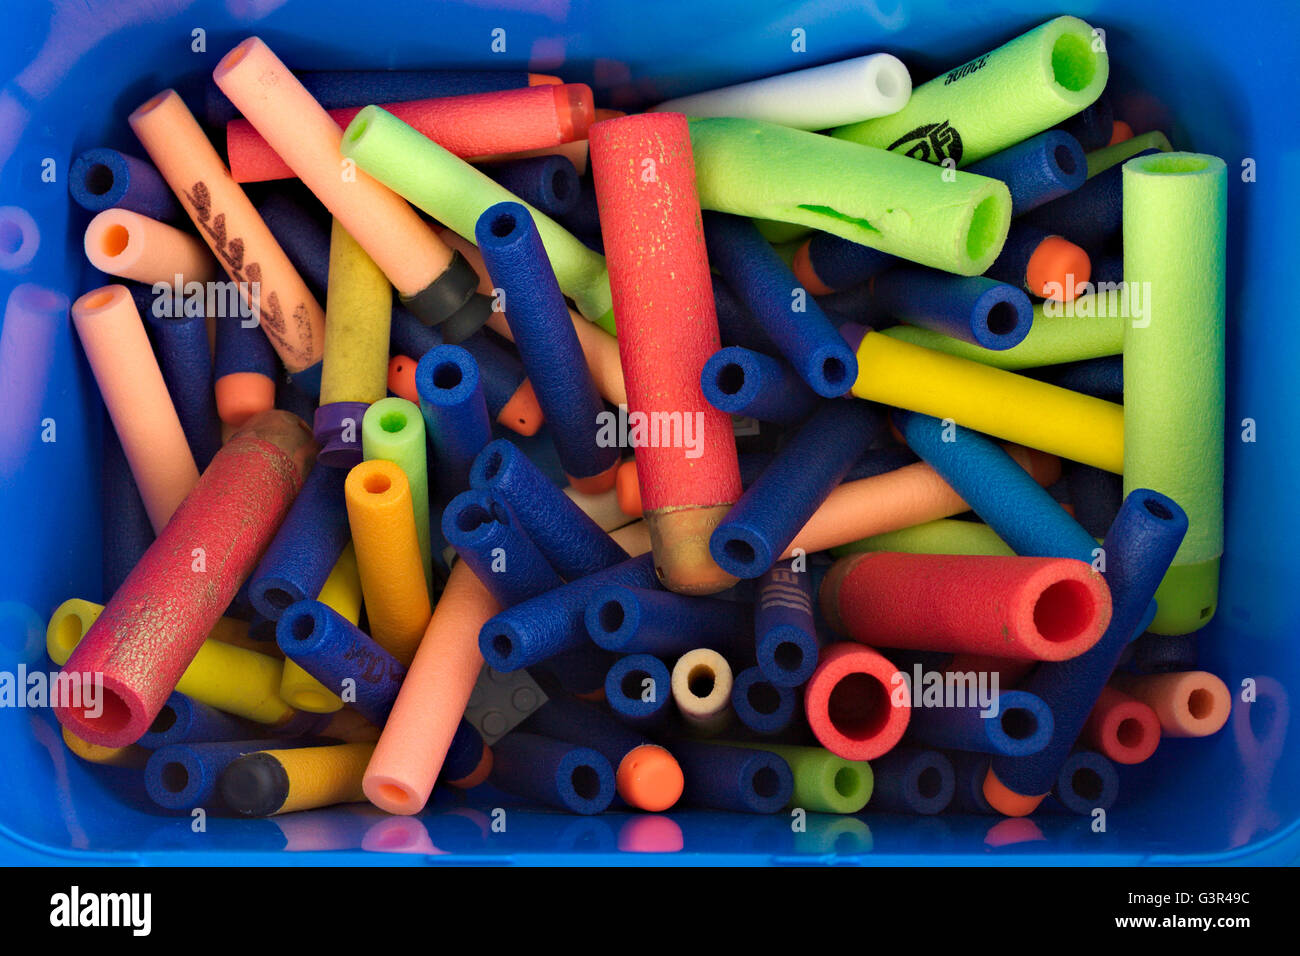 Schaumkanone Spielzeug Nerf dart in mehreren Farben in einer bluebox. Stockfoto